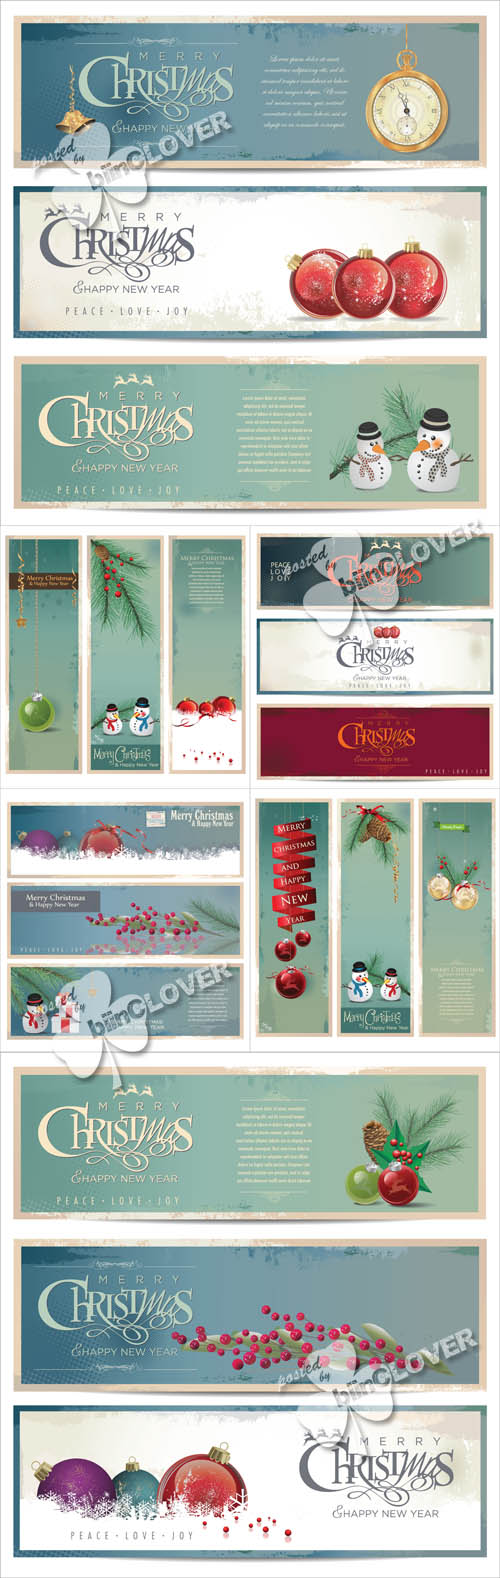 Christmas banners 0533